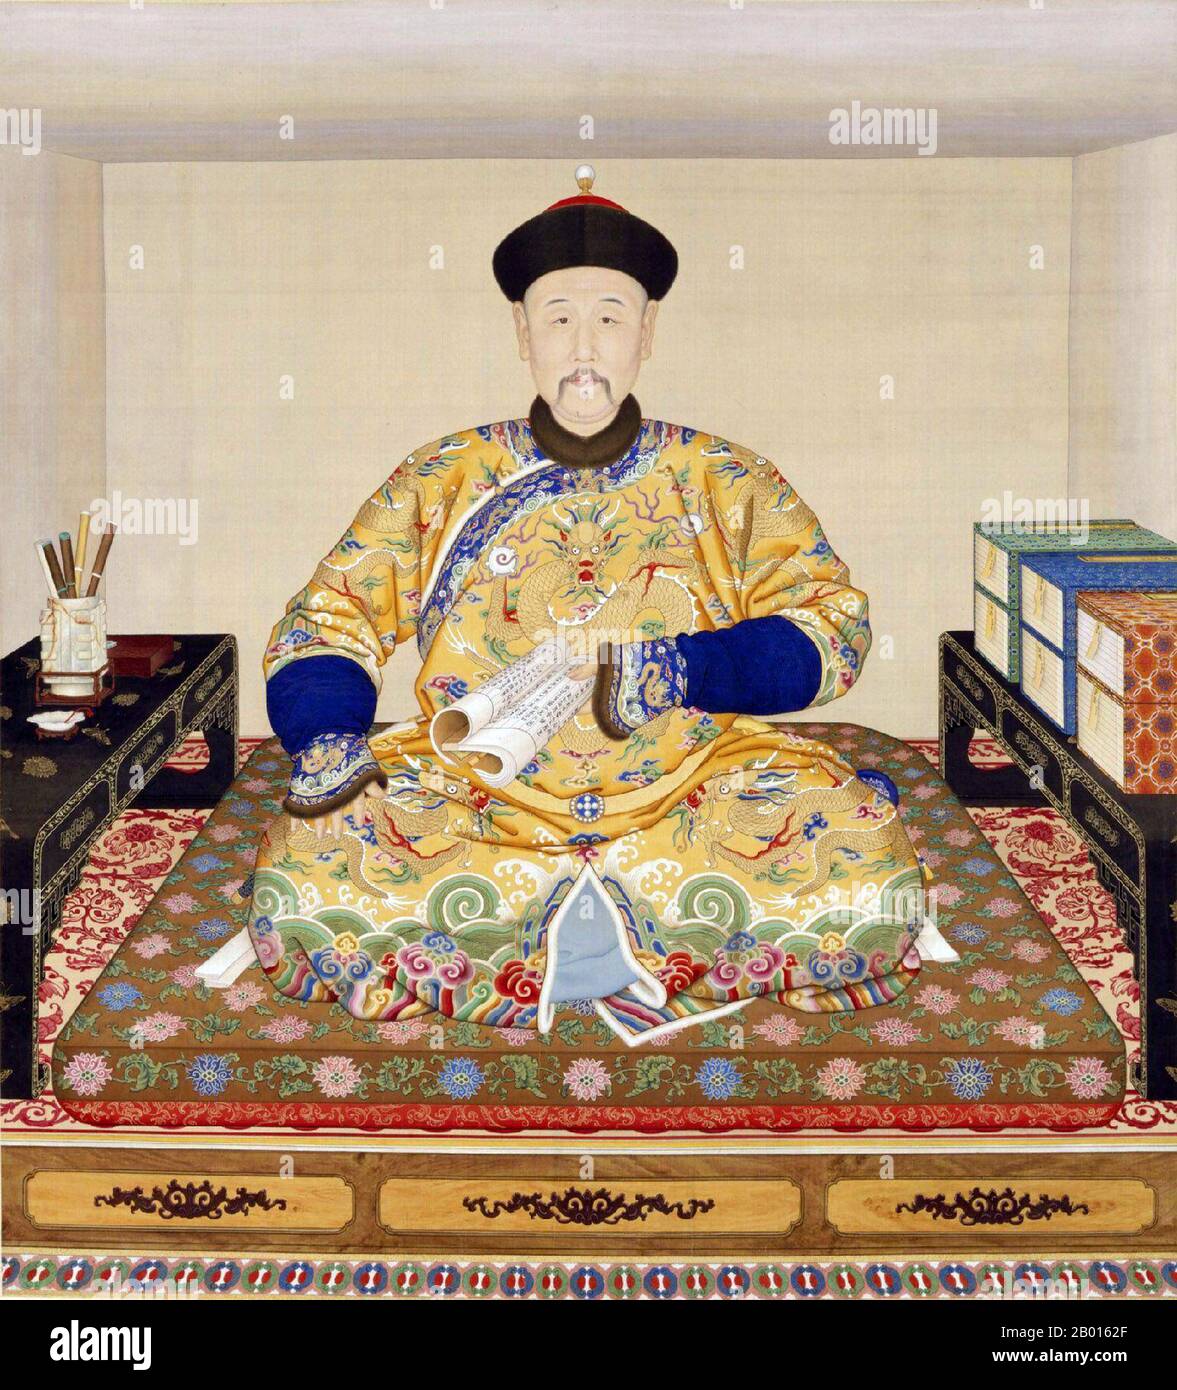 Chine : l'empereur Qianlong (25 septembre 1711 - 7 février 1799), à sa table d'écriture. Toile de défilement suspendue par Giuseppe Castiglione (1688-1766), c. 1750. L'empereur Qianlong, né Hongli et temple du